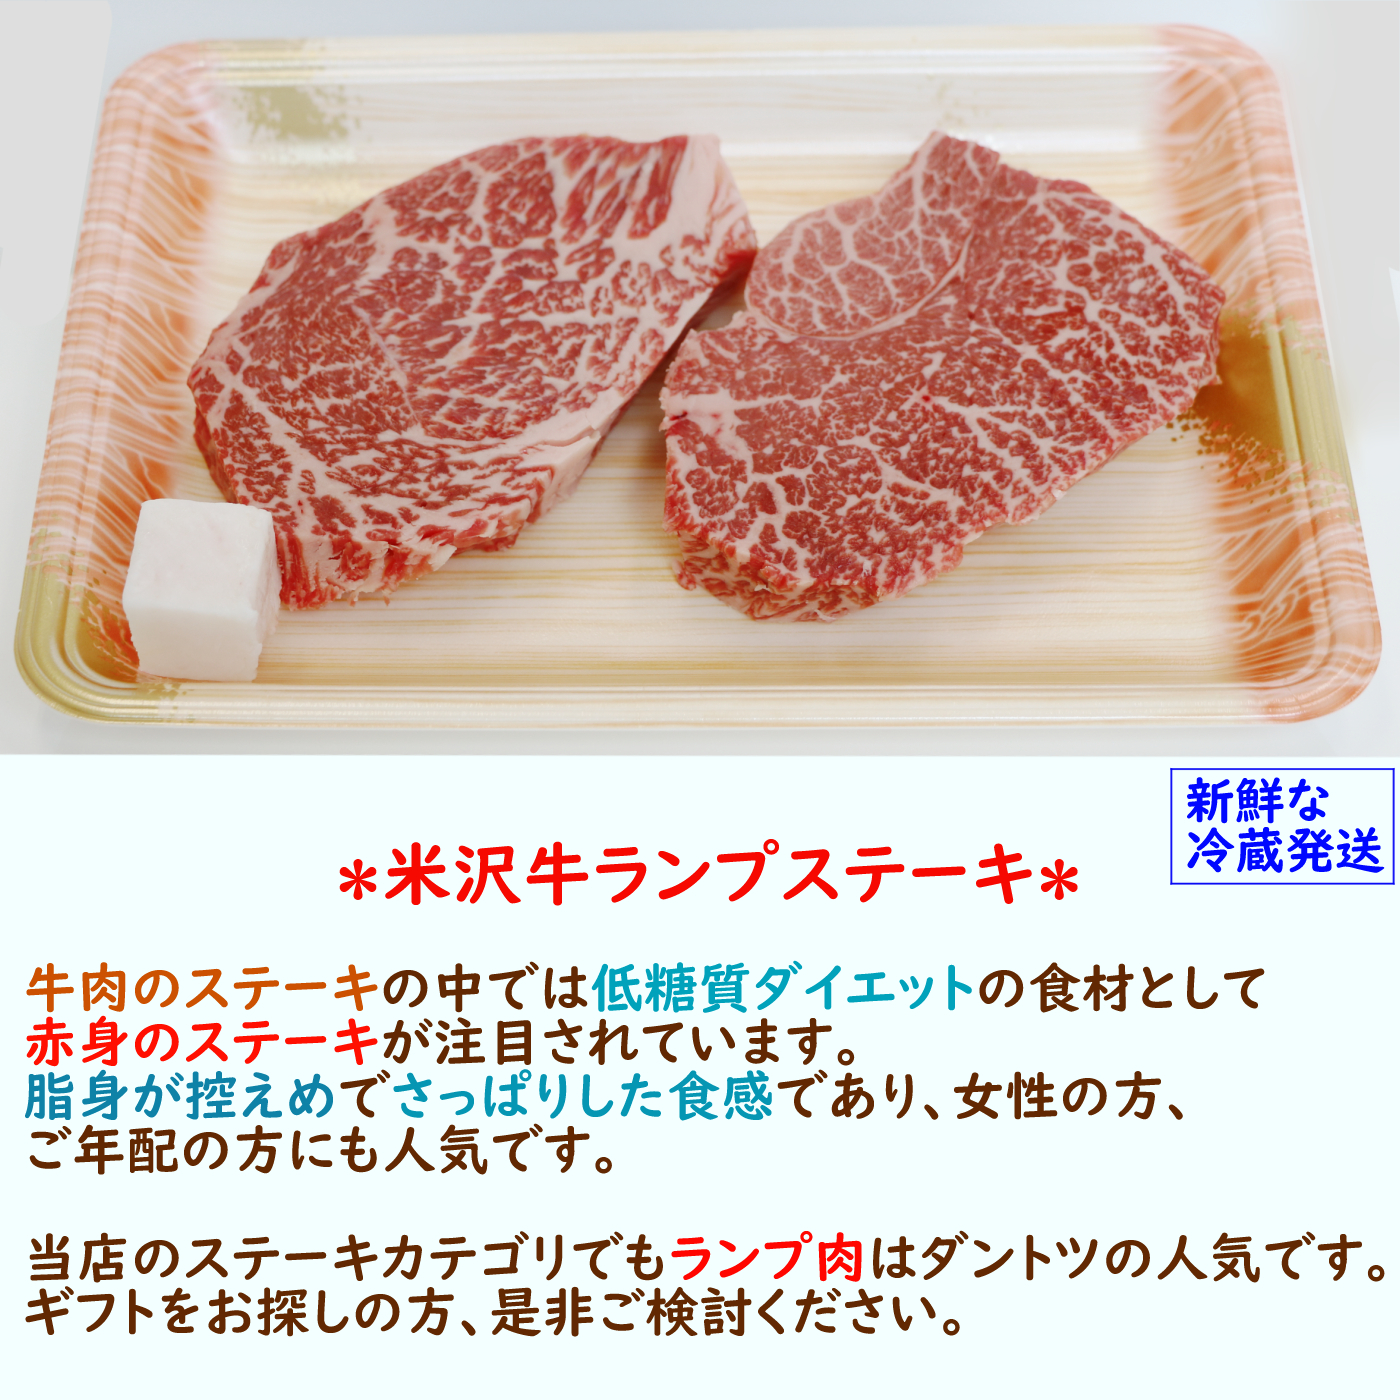 米沢牛 ランプ ステーキ 〔1枚150g〕 / 脂ひかえめで濃厚な味の赤身肉です。画像